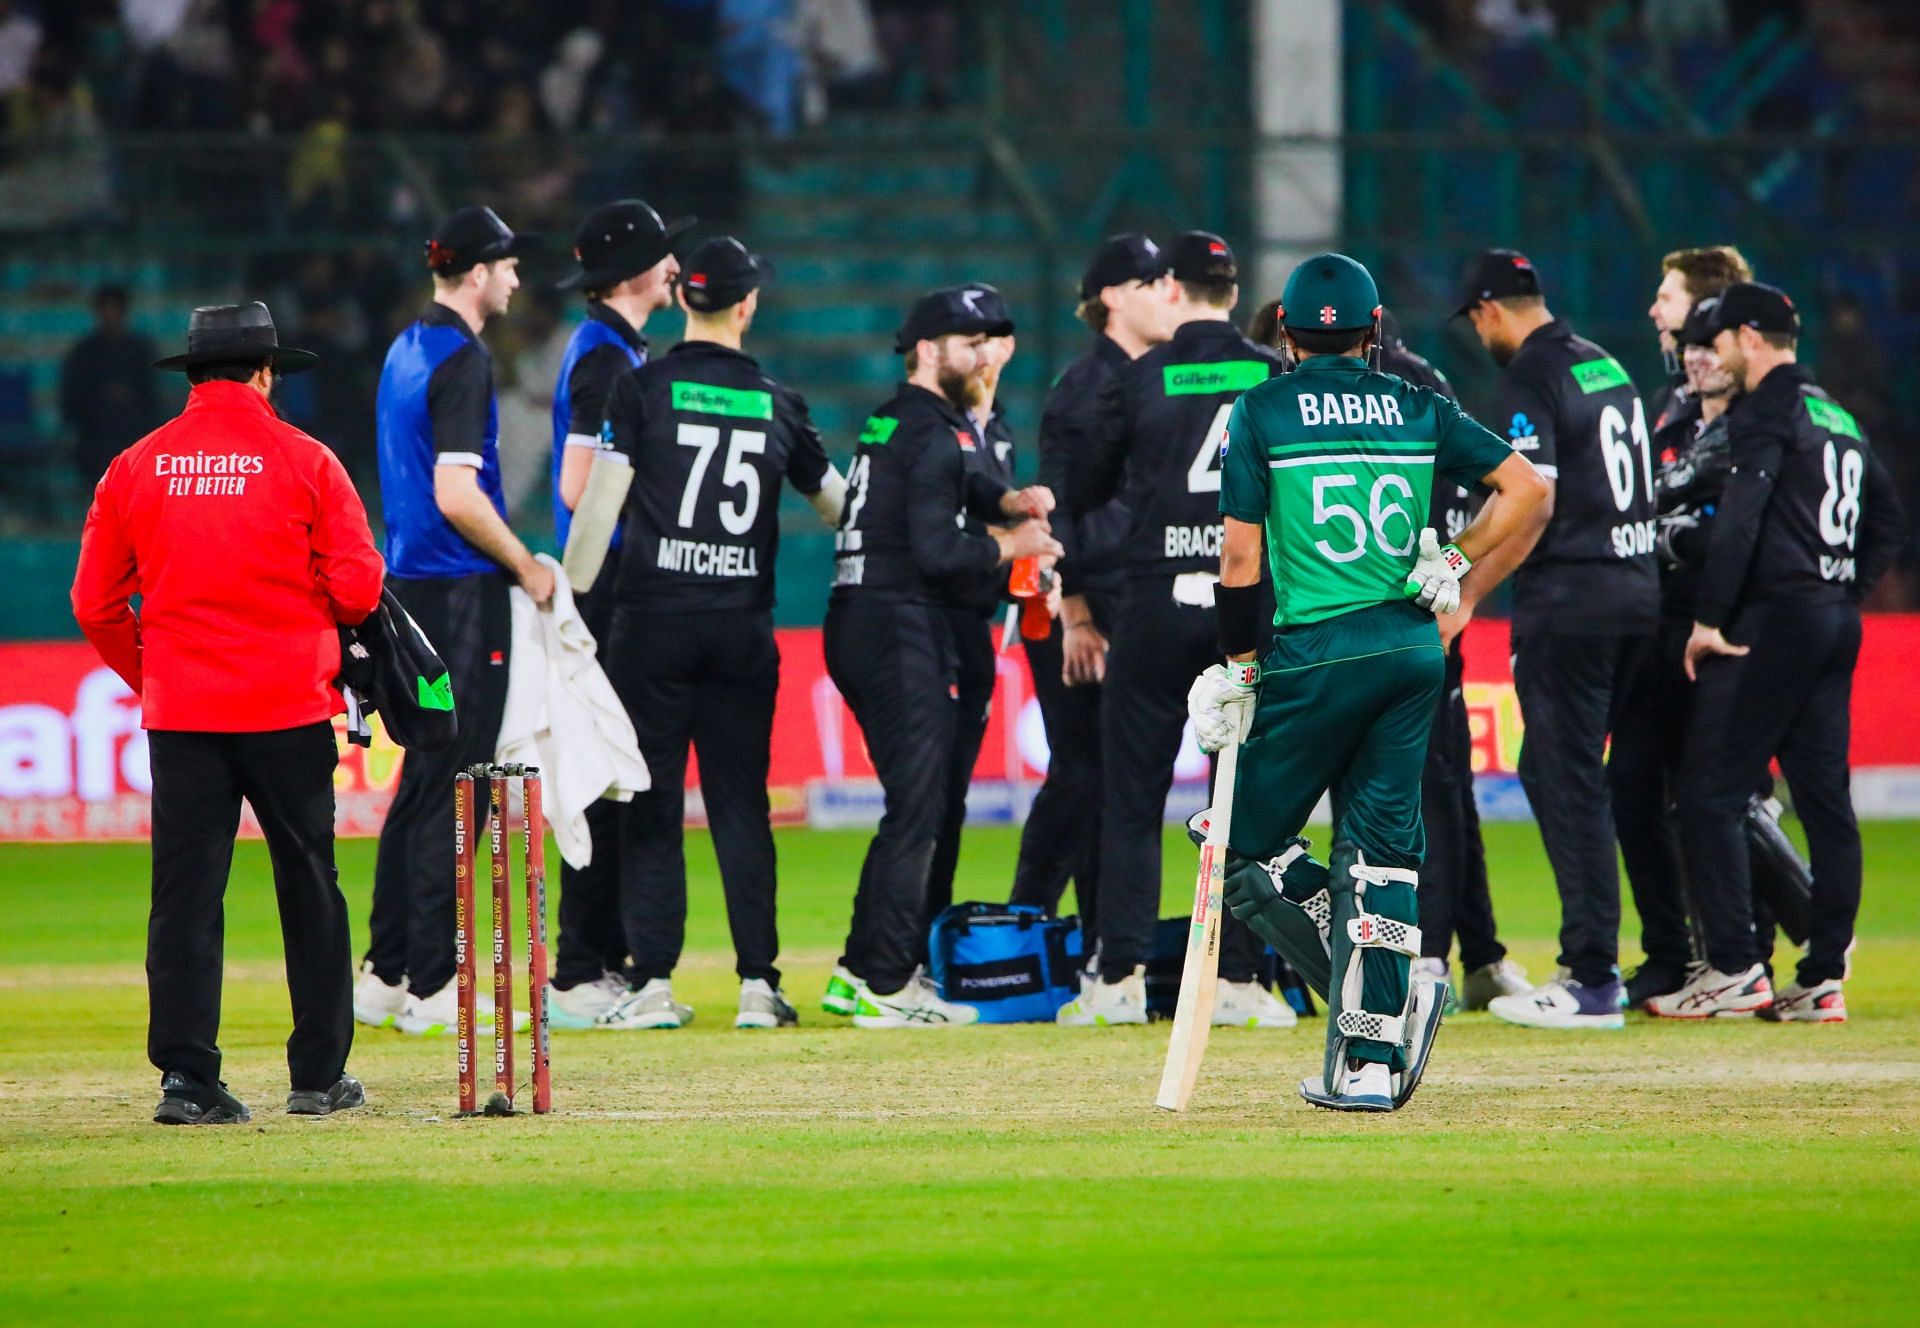 Pakistan vs New Zealand 2nd ODI 